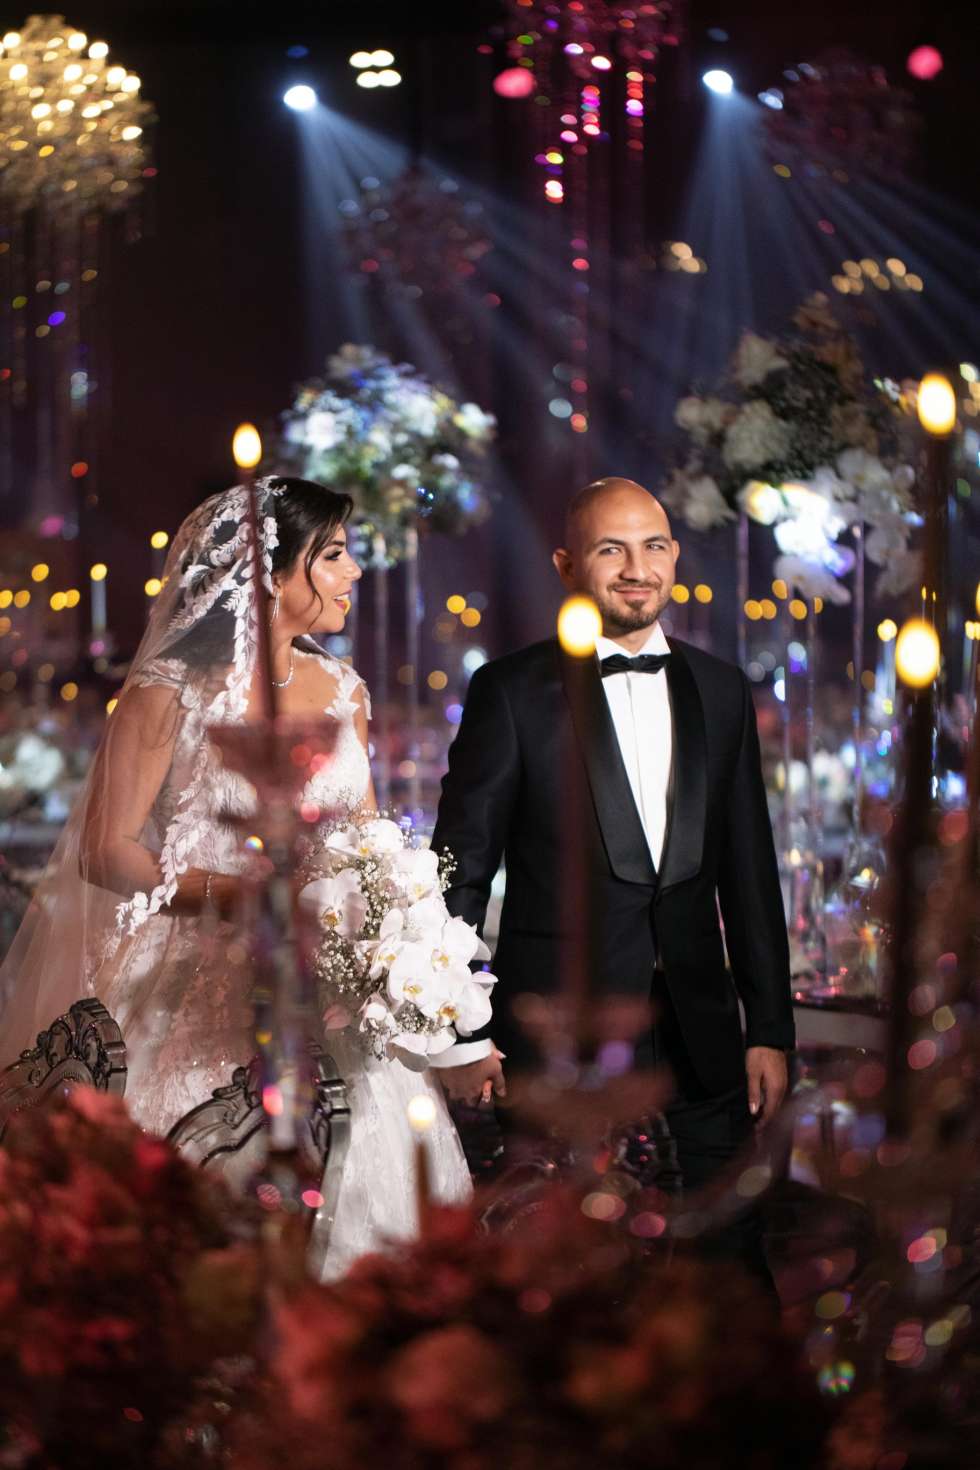 حفل زفاف من وحي الكريستال الكوني في أبو ظبي